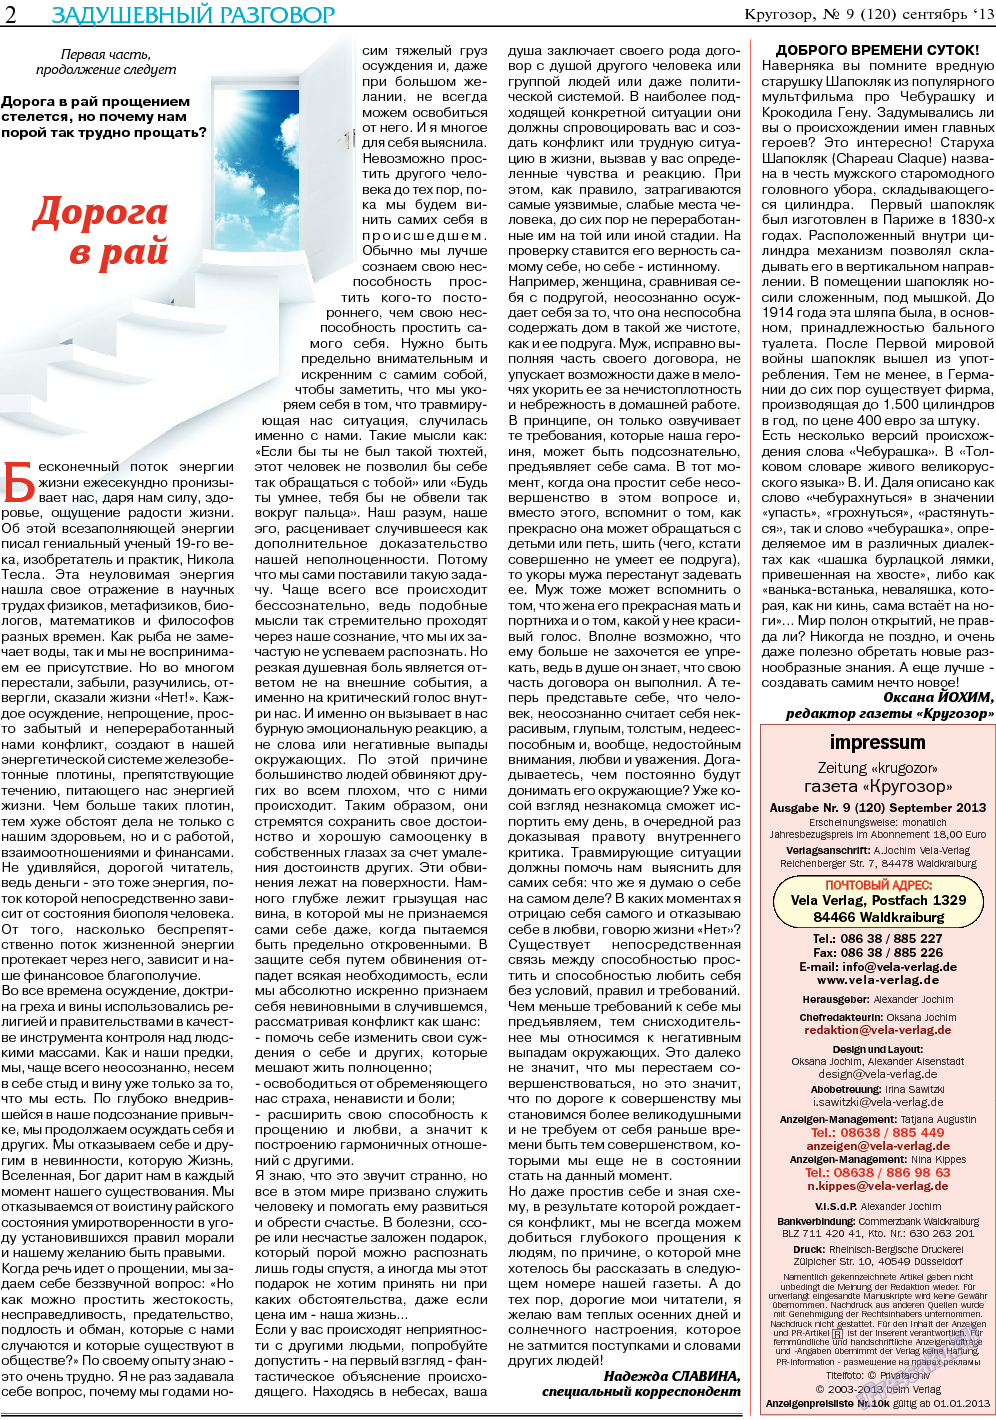 Кругозор, газета. 2013 №9 стр.2